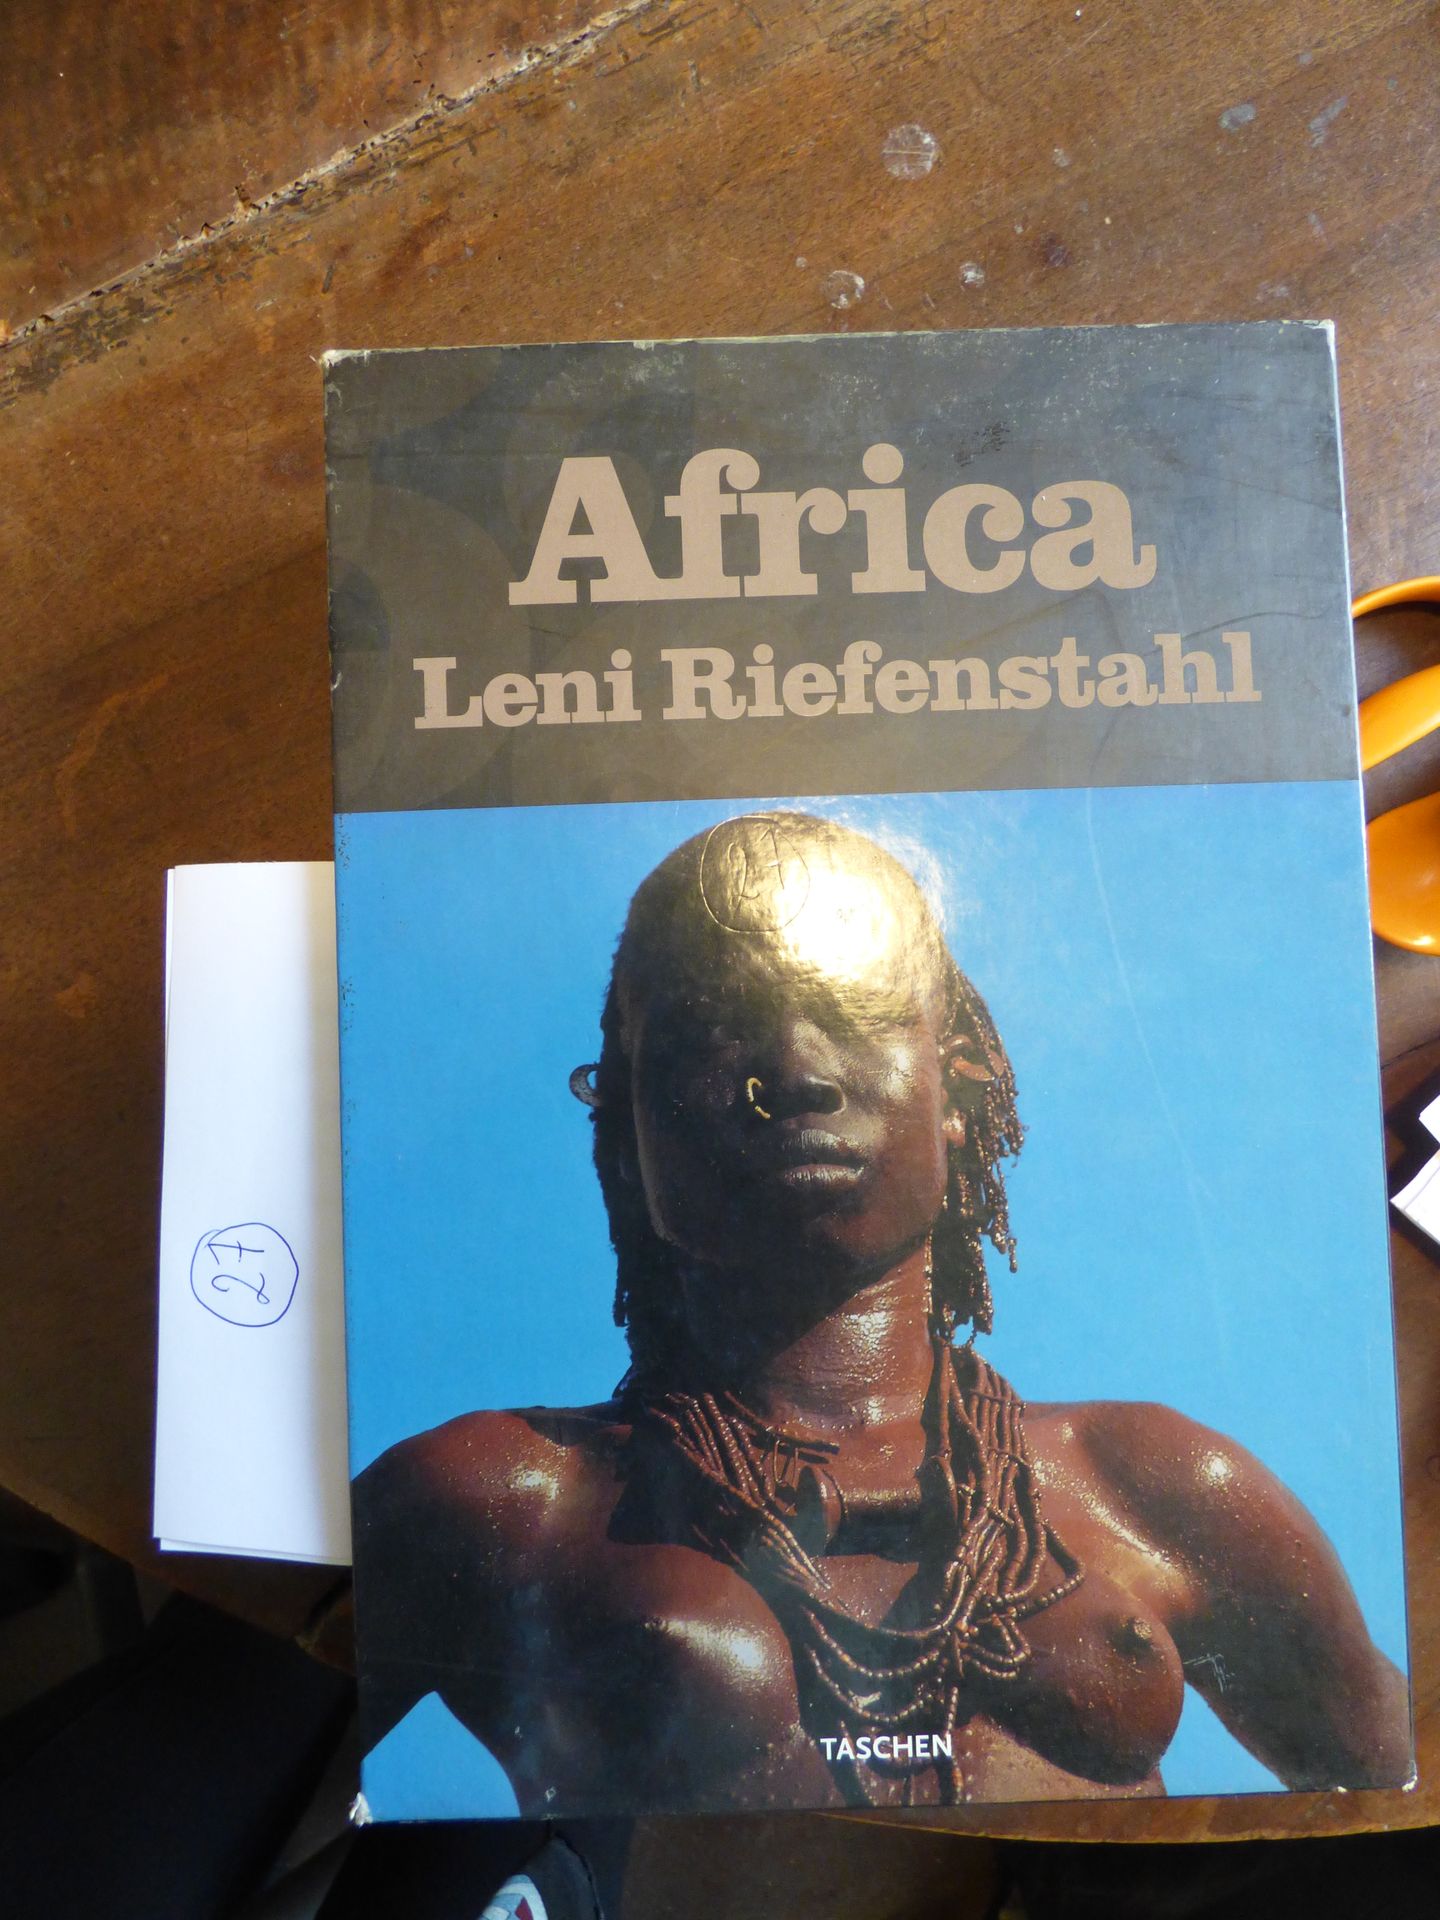 AFRICA Leni Riefenstahl, Taschen, 2005